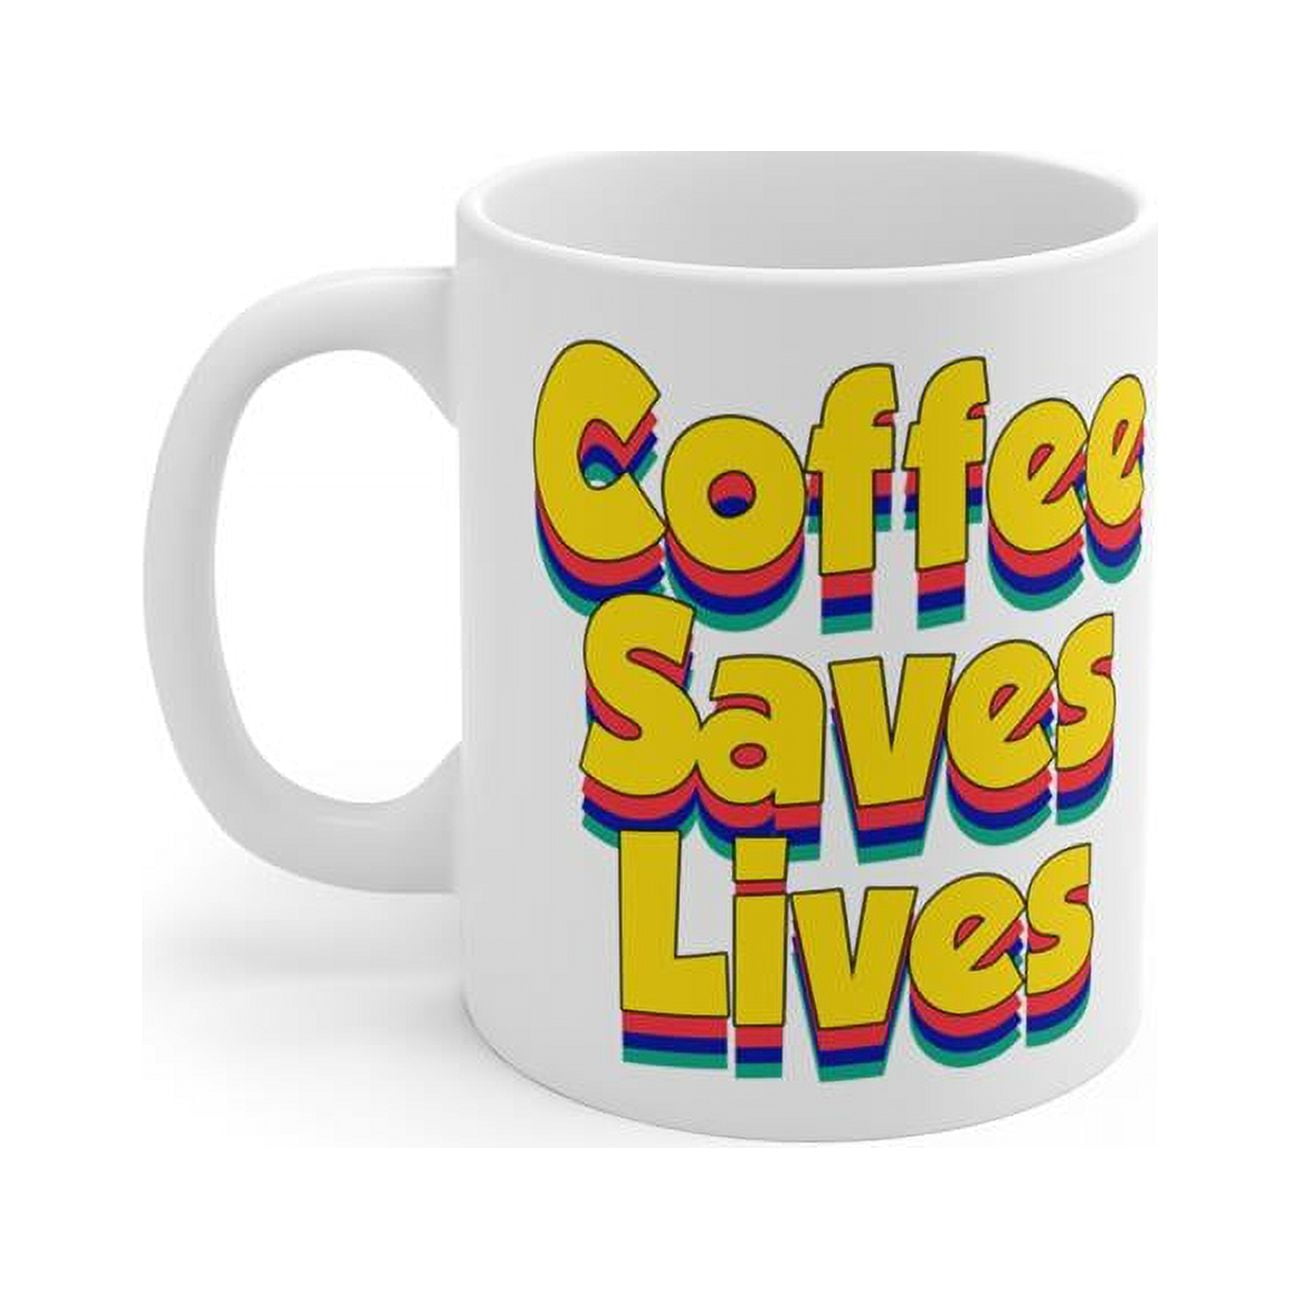 Cmc-w10105 Coffee Saves Lives, Humor White Coffee Mug, 11 Oz - Ceramic